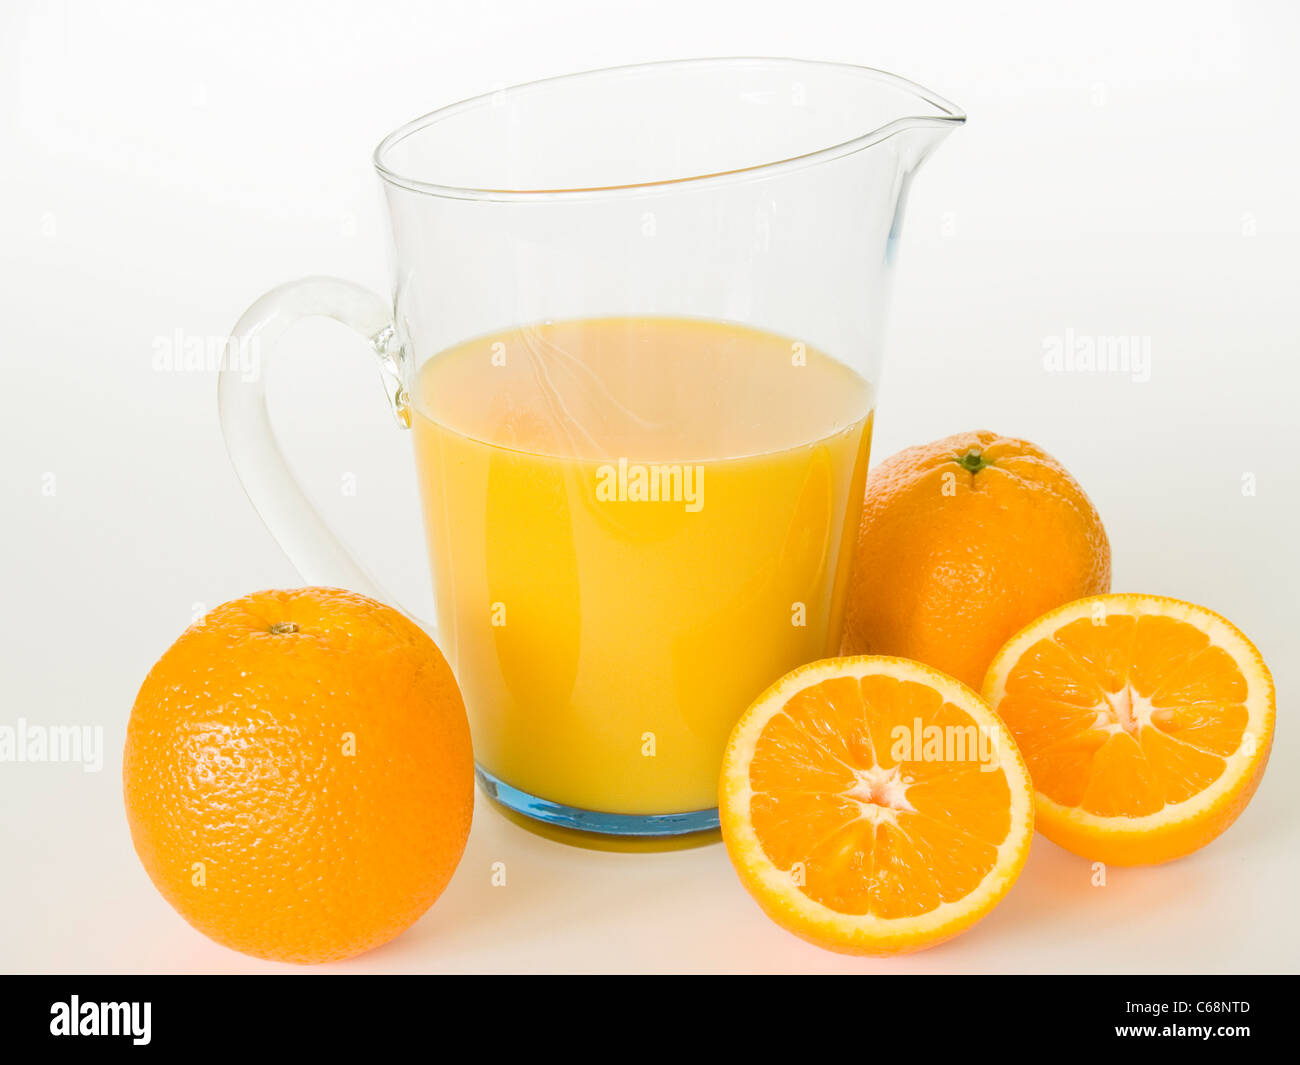 ein Glaskrug mit Orangensaft, davor liegen Orangen | a glass jug with orange juice, in front are oranges Stock Photo